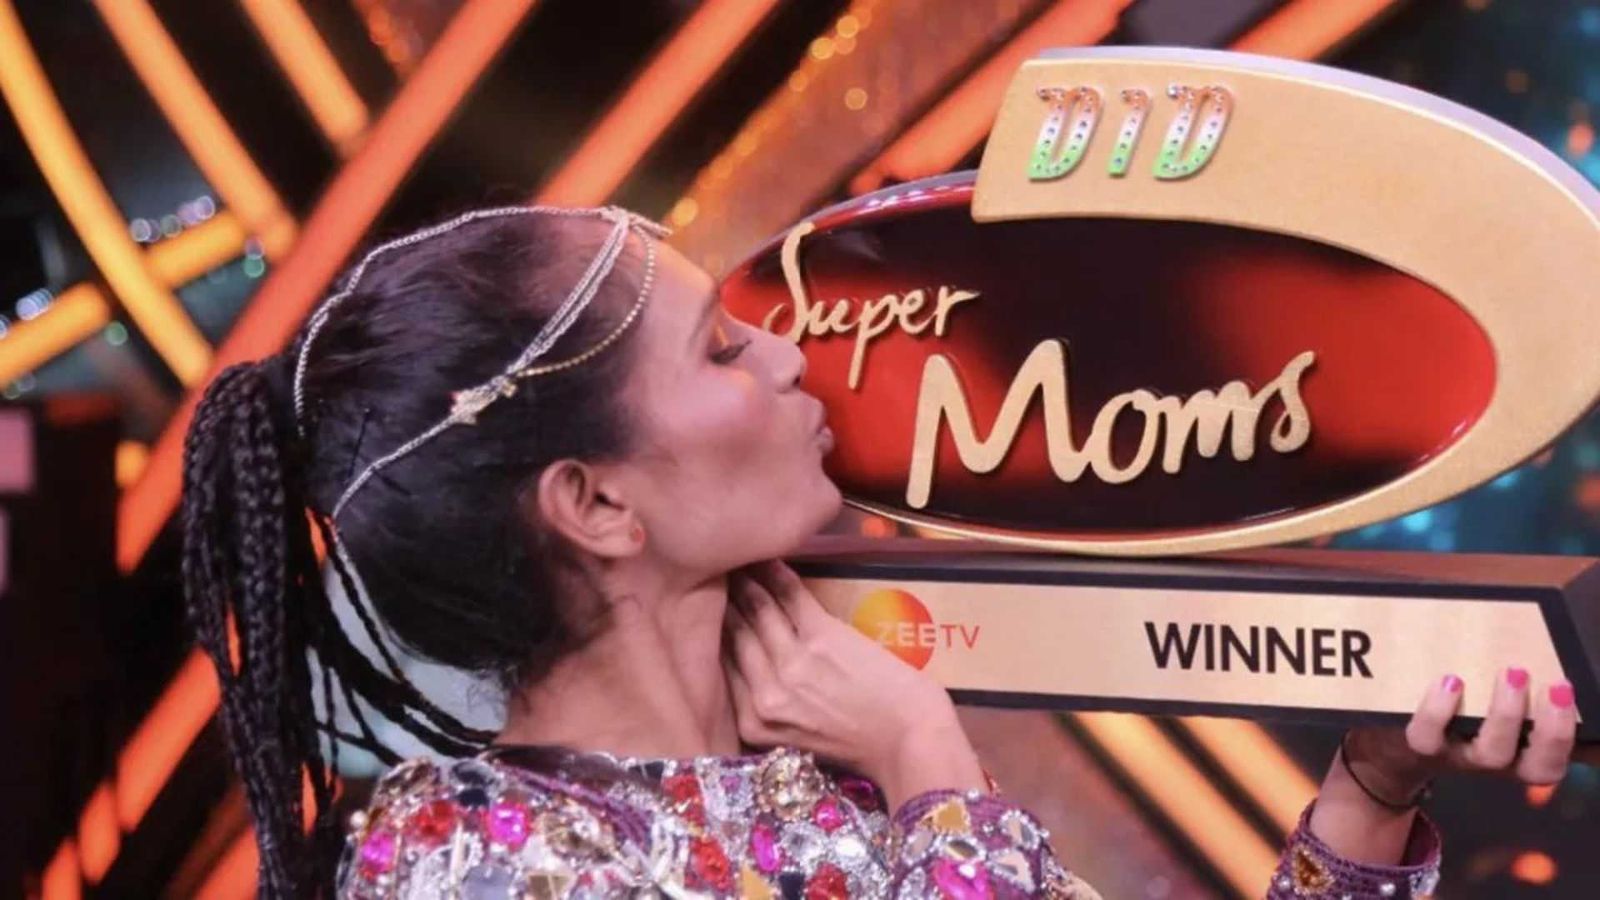 DID Super Moms 3 Winner: दिहाड़ी मजदूर वर्षा बुमरा ने जीता शो, कर्जा लेकर शो में लिया था हिस्सा